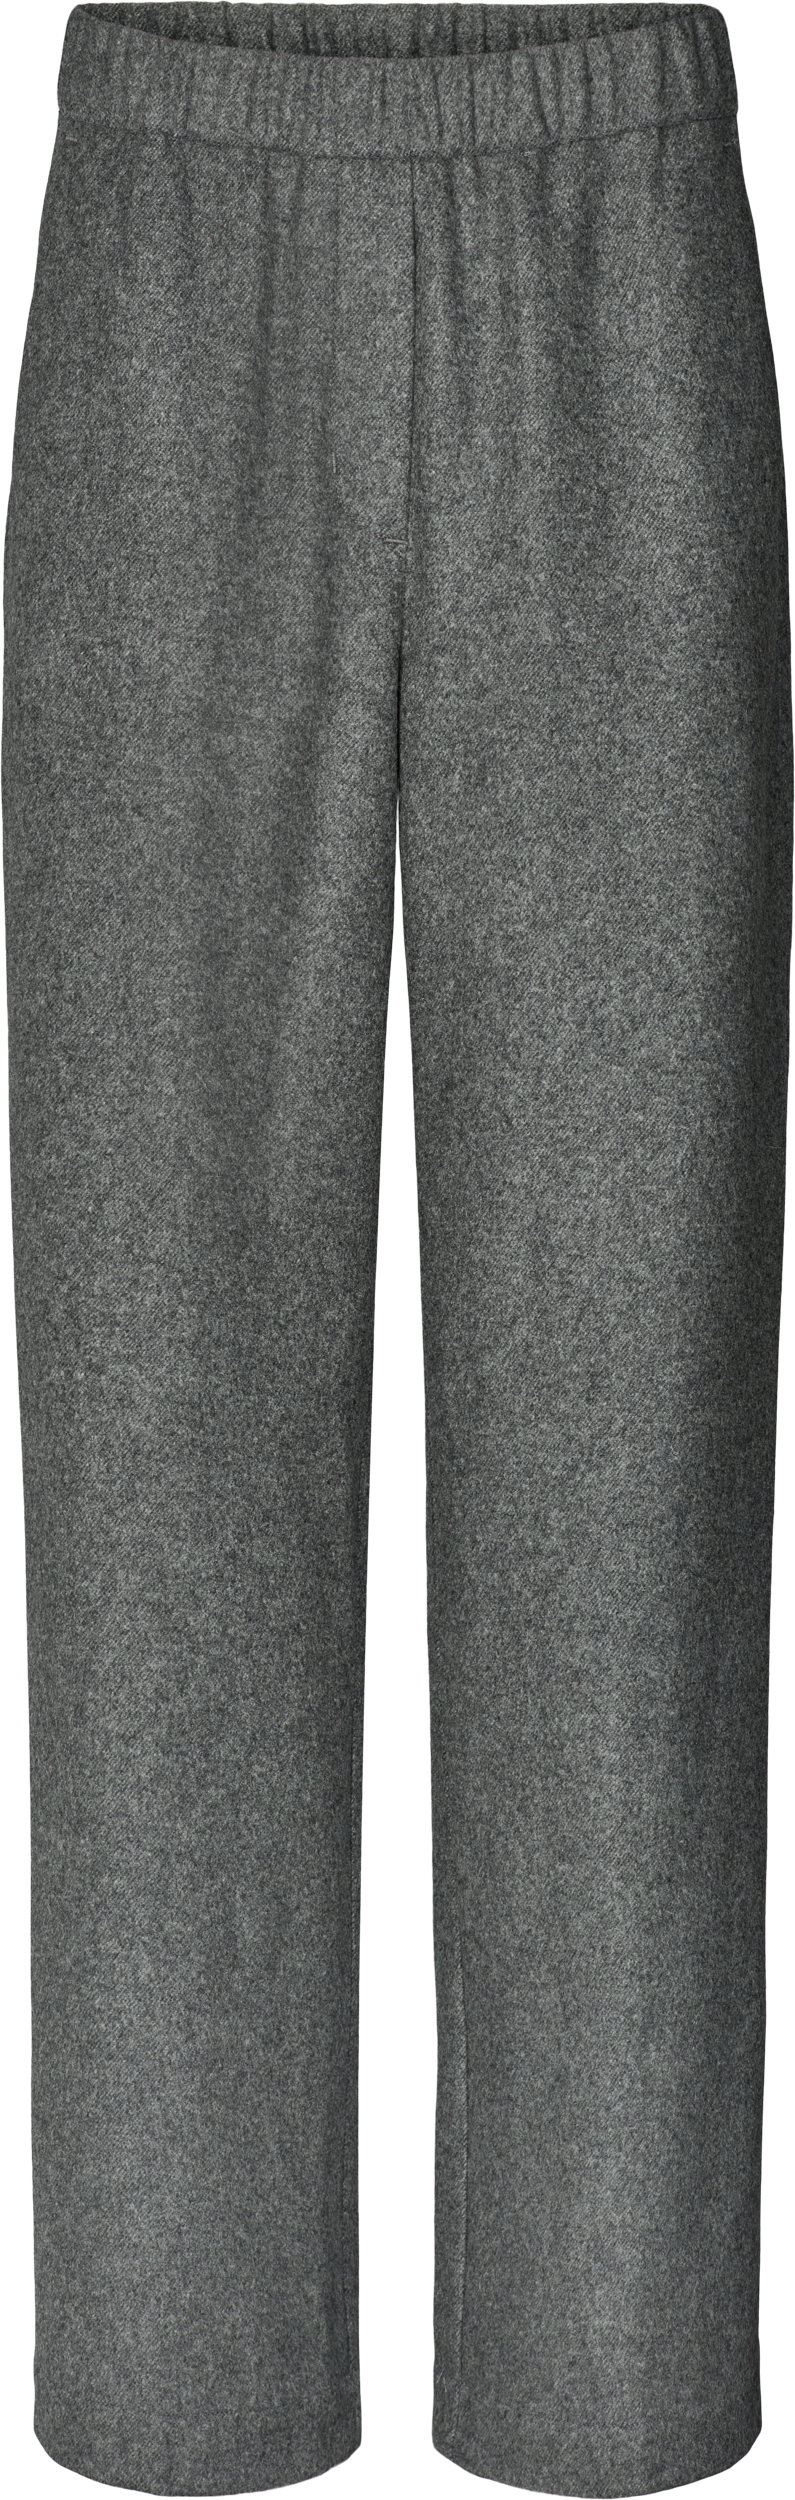 GAI+LISVA Lea Pant Pants & Shorts 605 Dark Grey